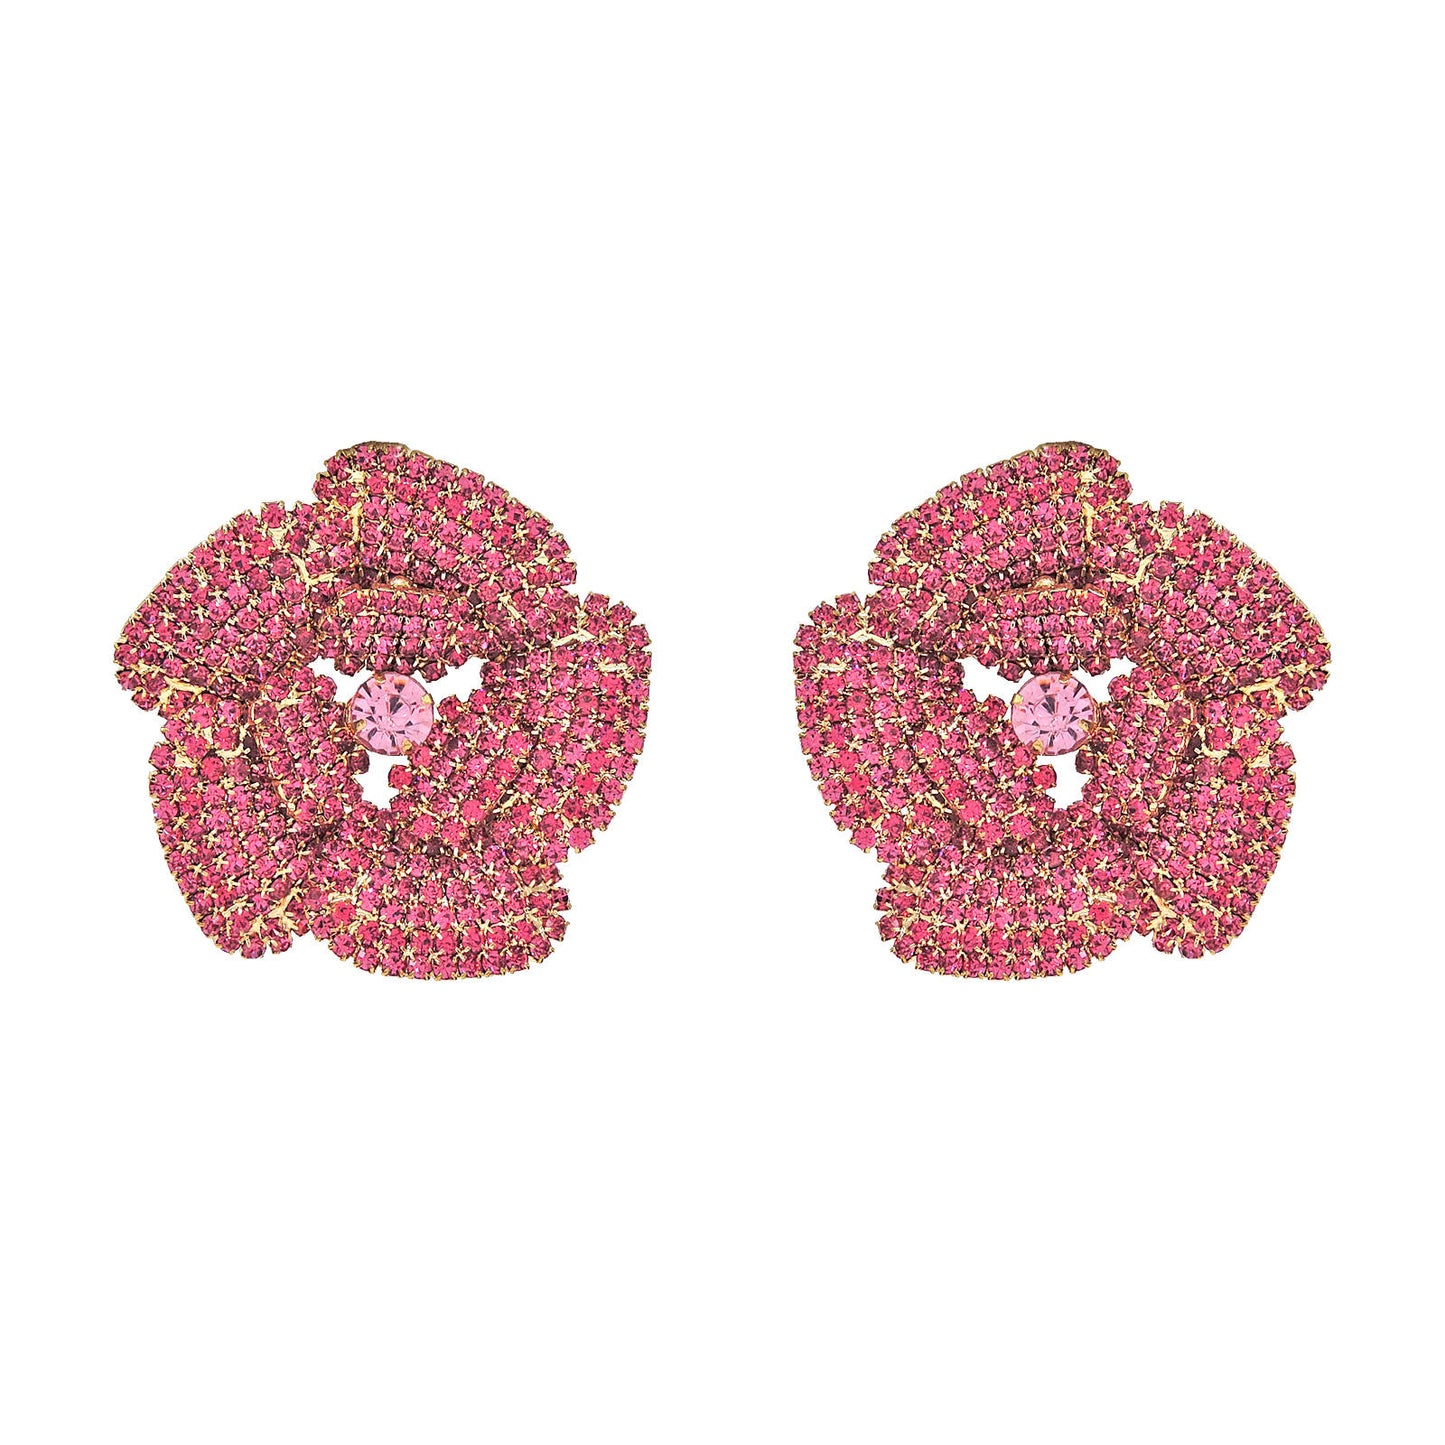 Floral cluster Earrings.